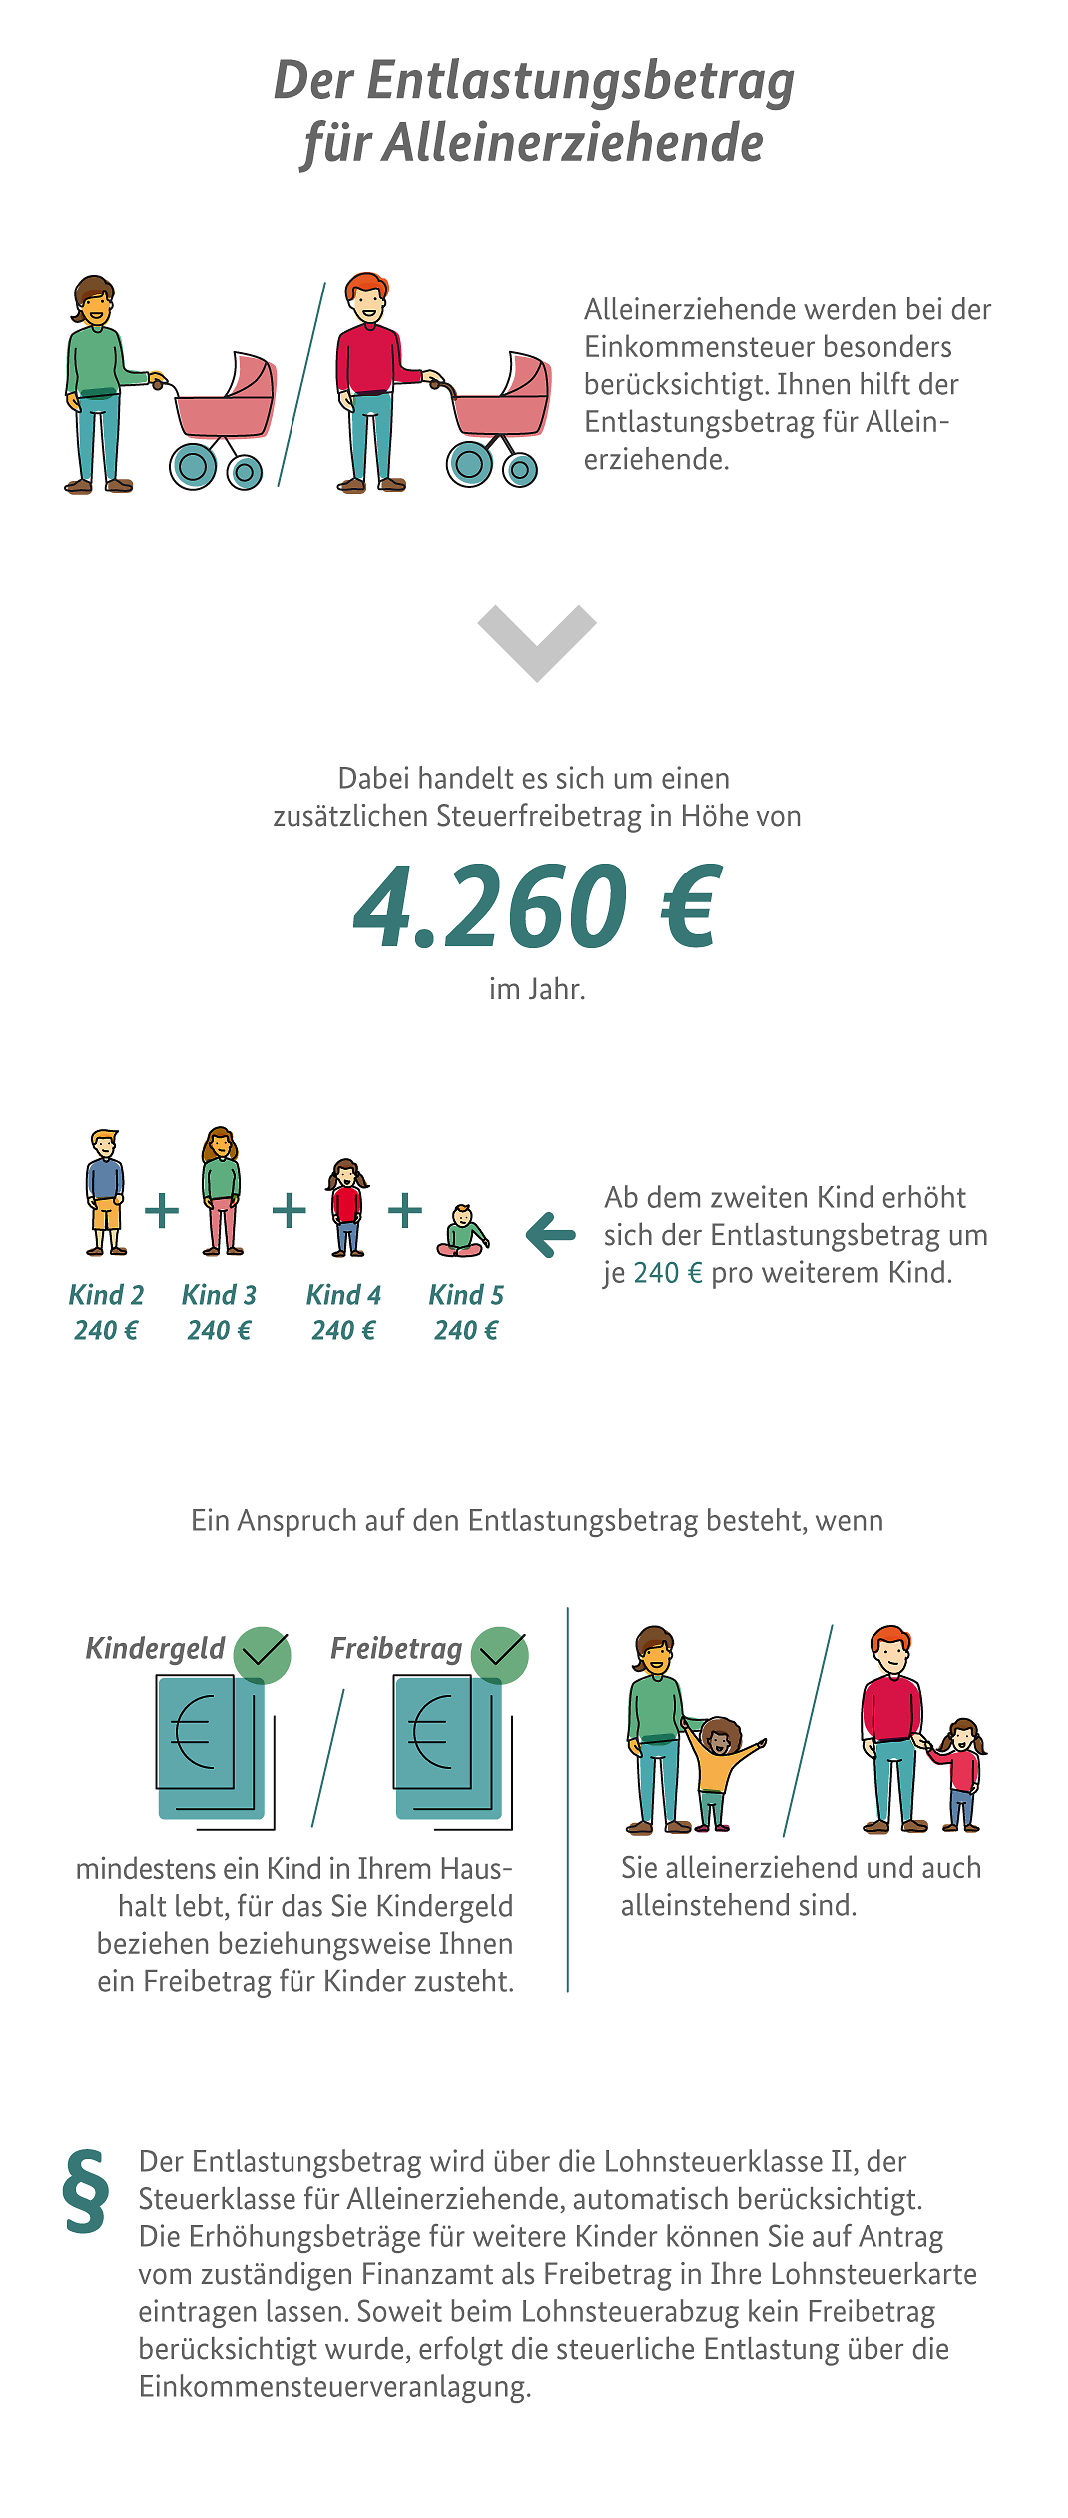 Die Infografik erklärt den Entlastungsbetrag für Alleinerziehende und wie hoch er ist